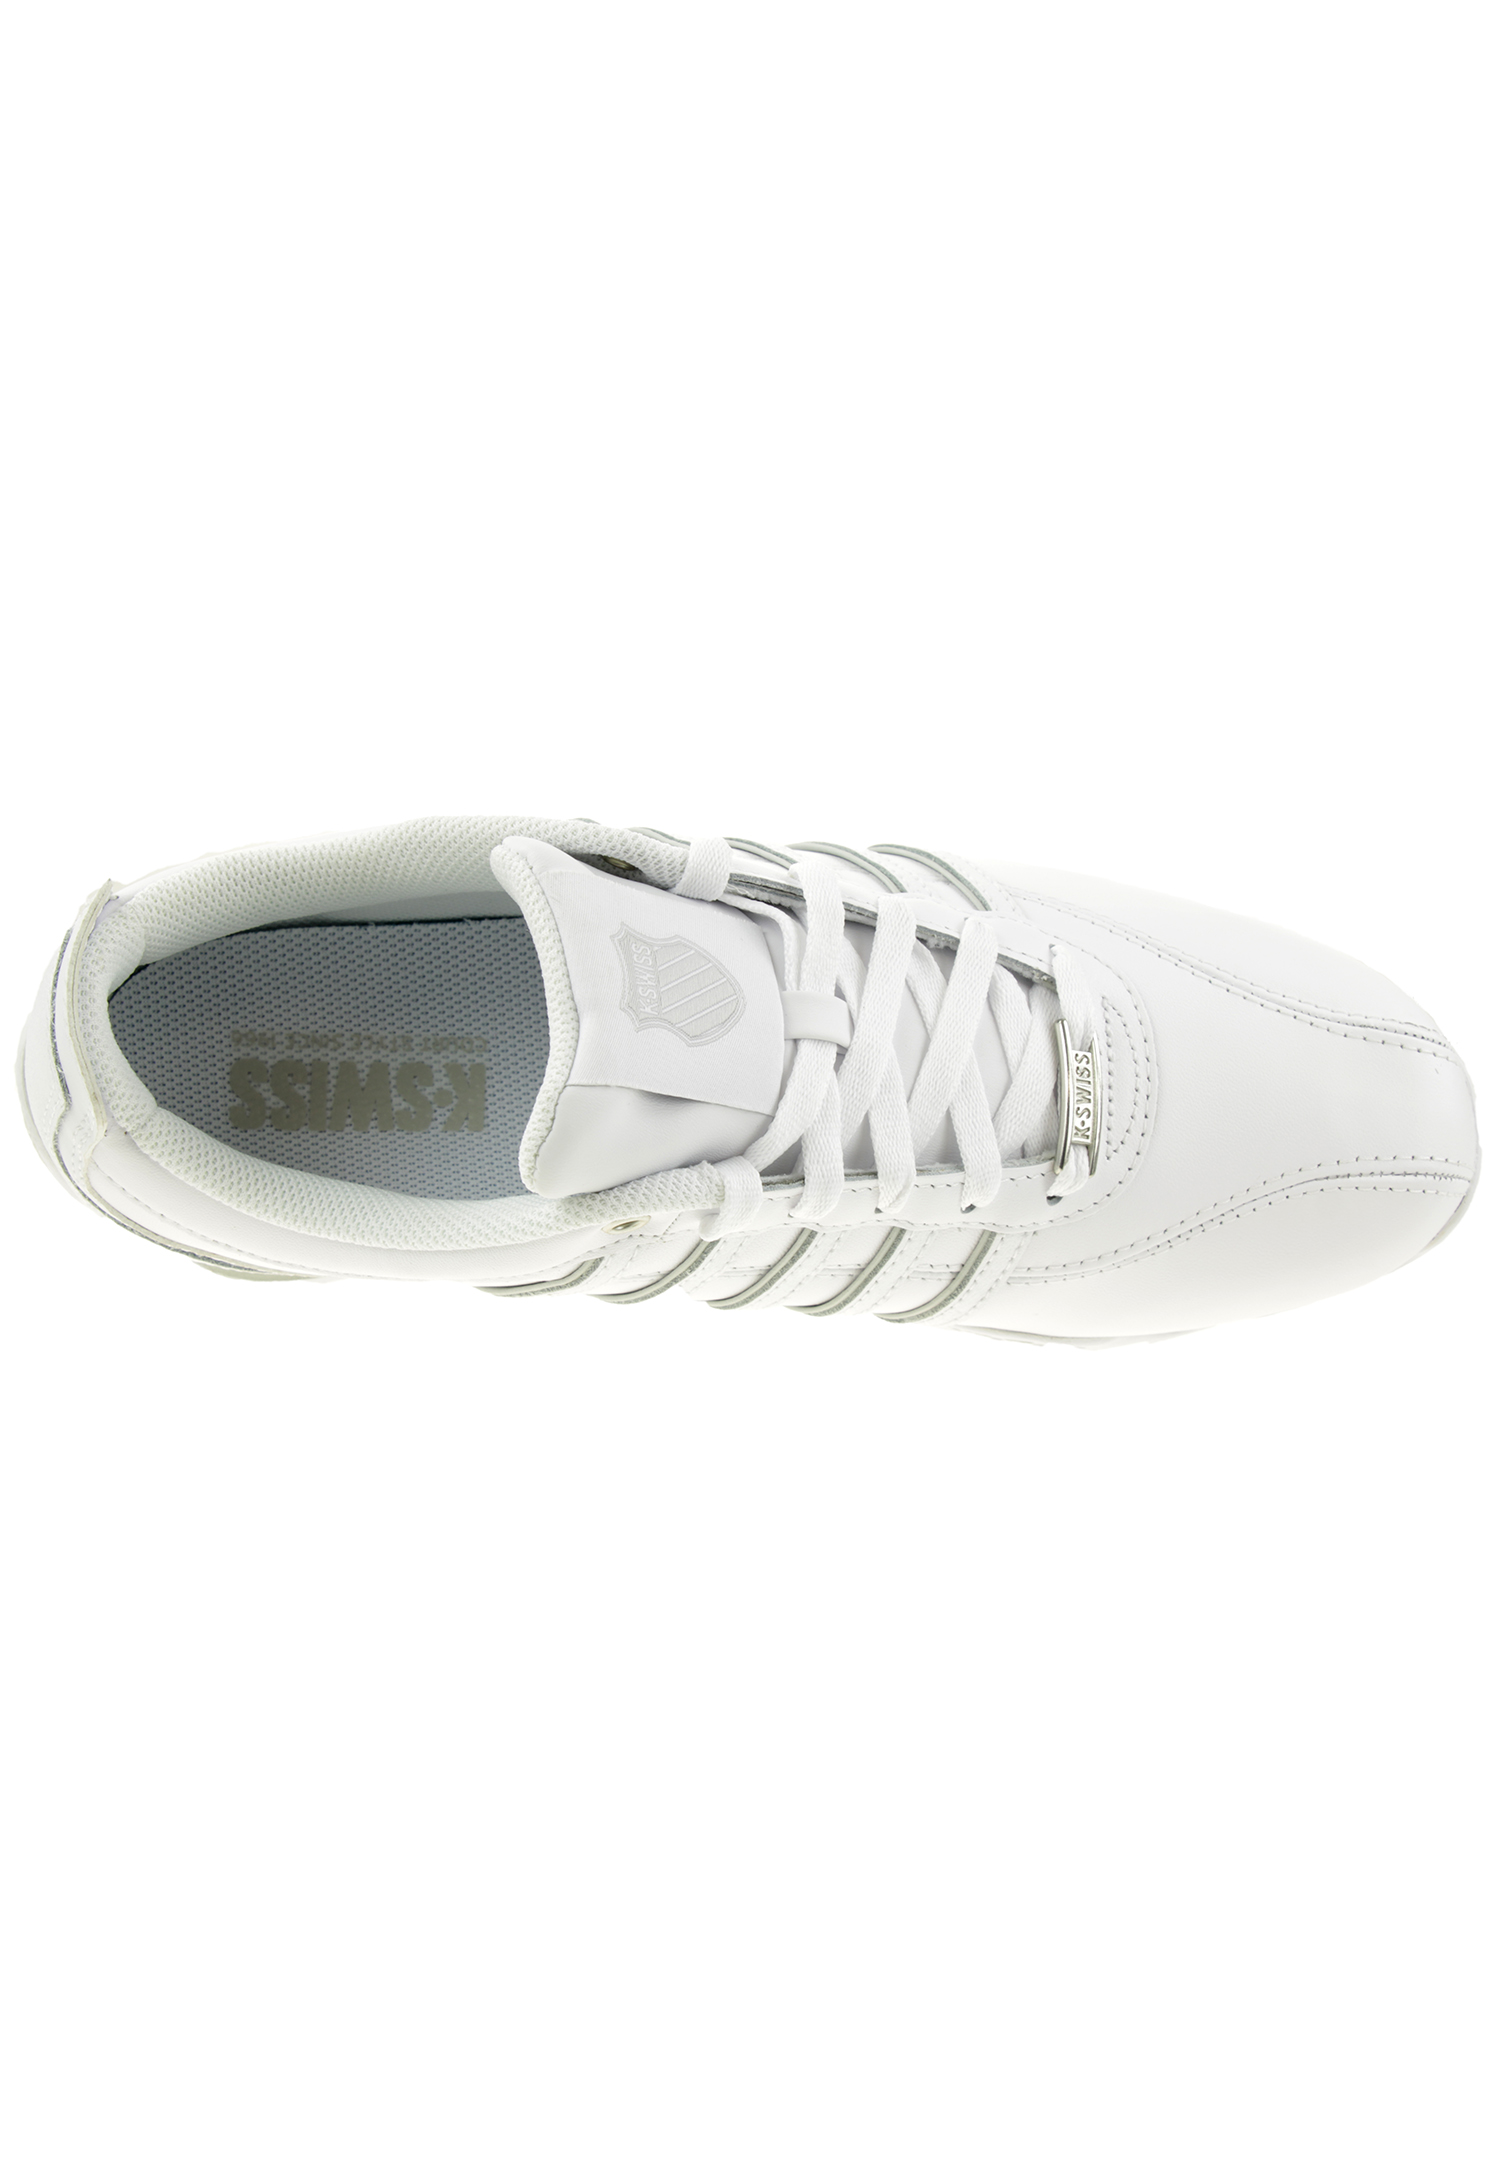 K-SWISS Arvee 1.5 Herren Sneaker Sportschuhe 02453-980-M Weiß / Grau